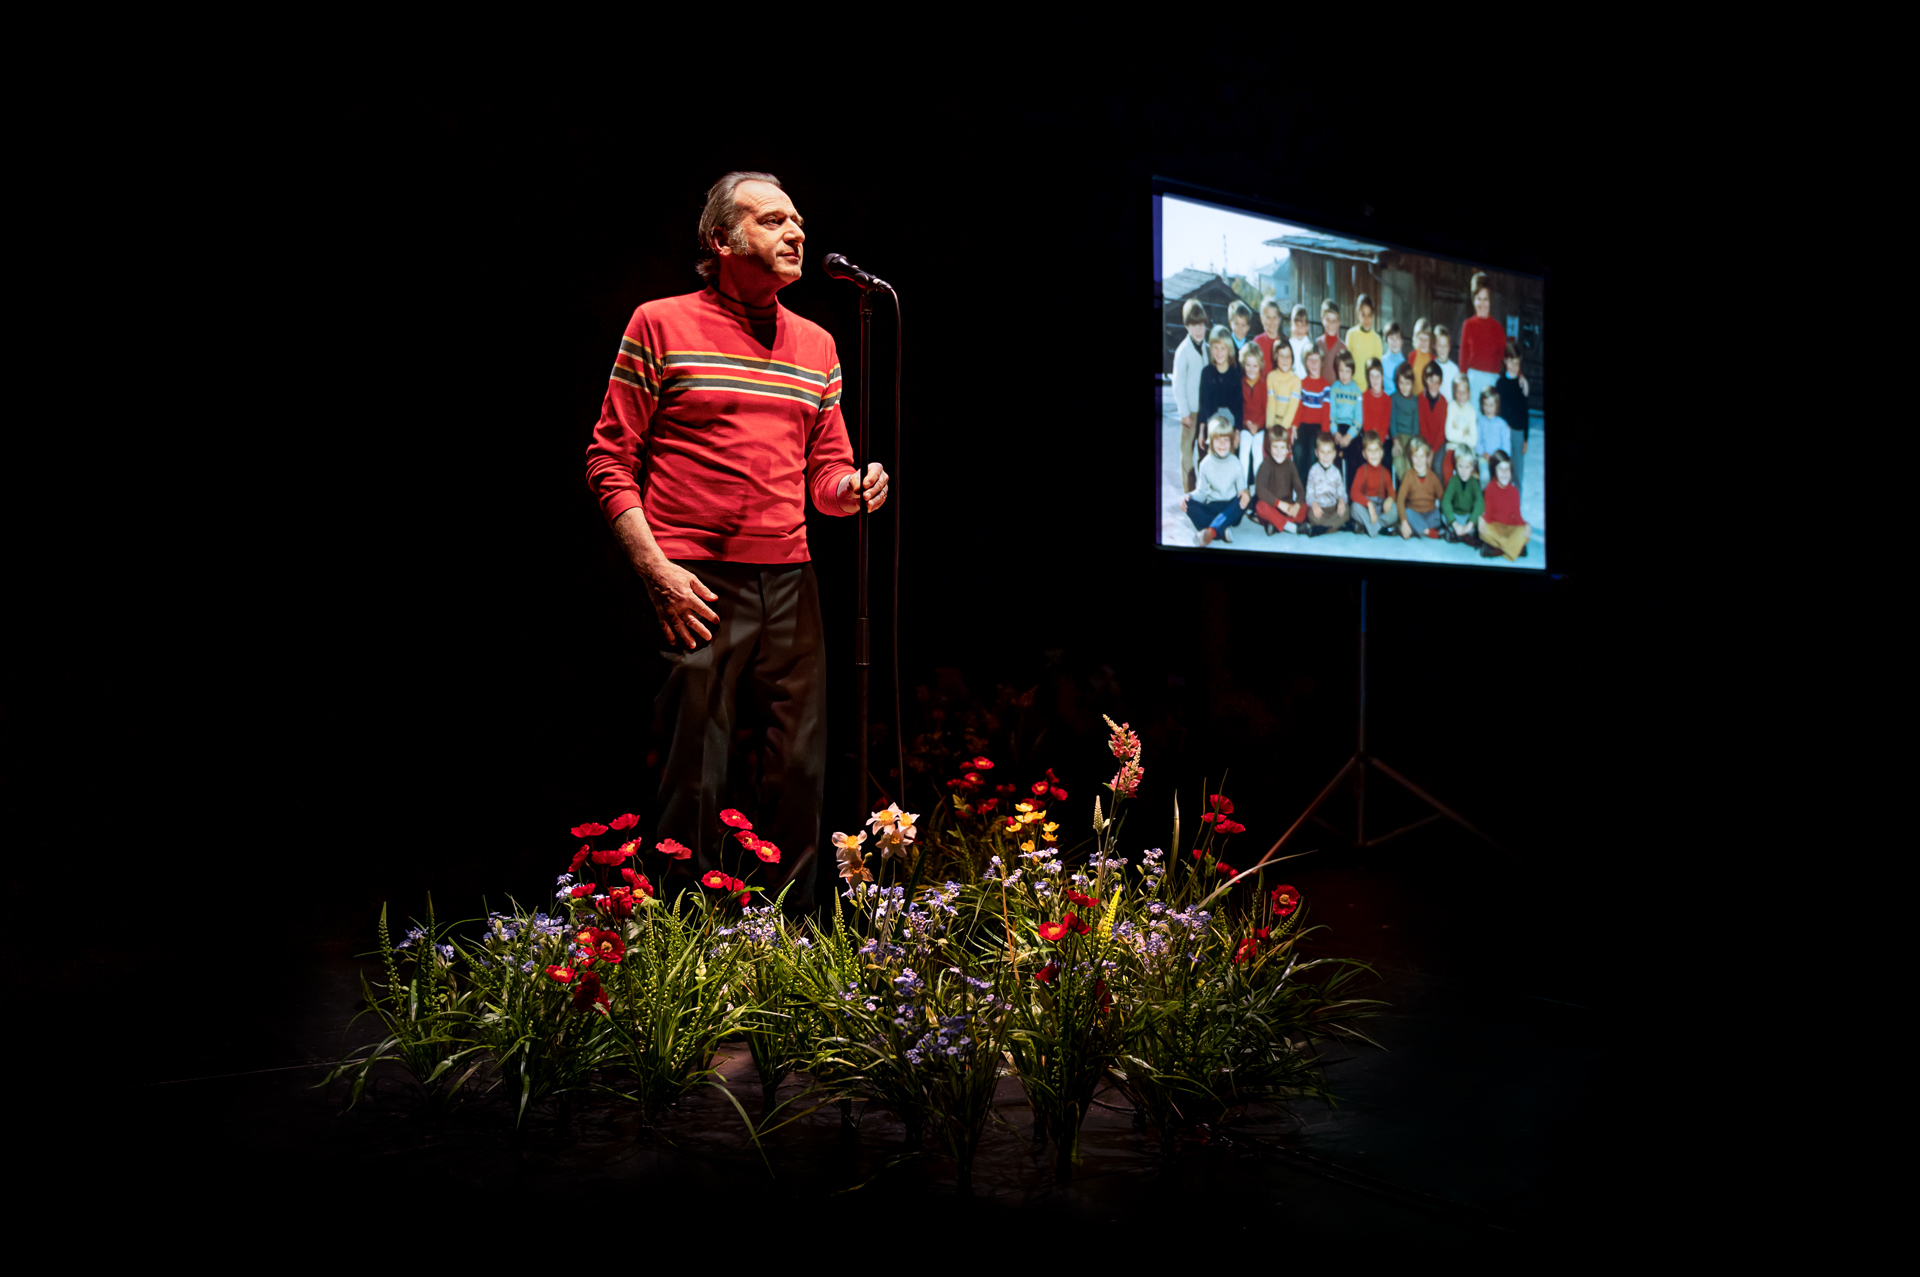 Une photo de classe est projetée sur un écran blan. Le comédien positionné derrière un parterre de fleurs des champs est vêtu d'un pull rouge et se tien debout face à un micro sur pied